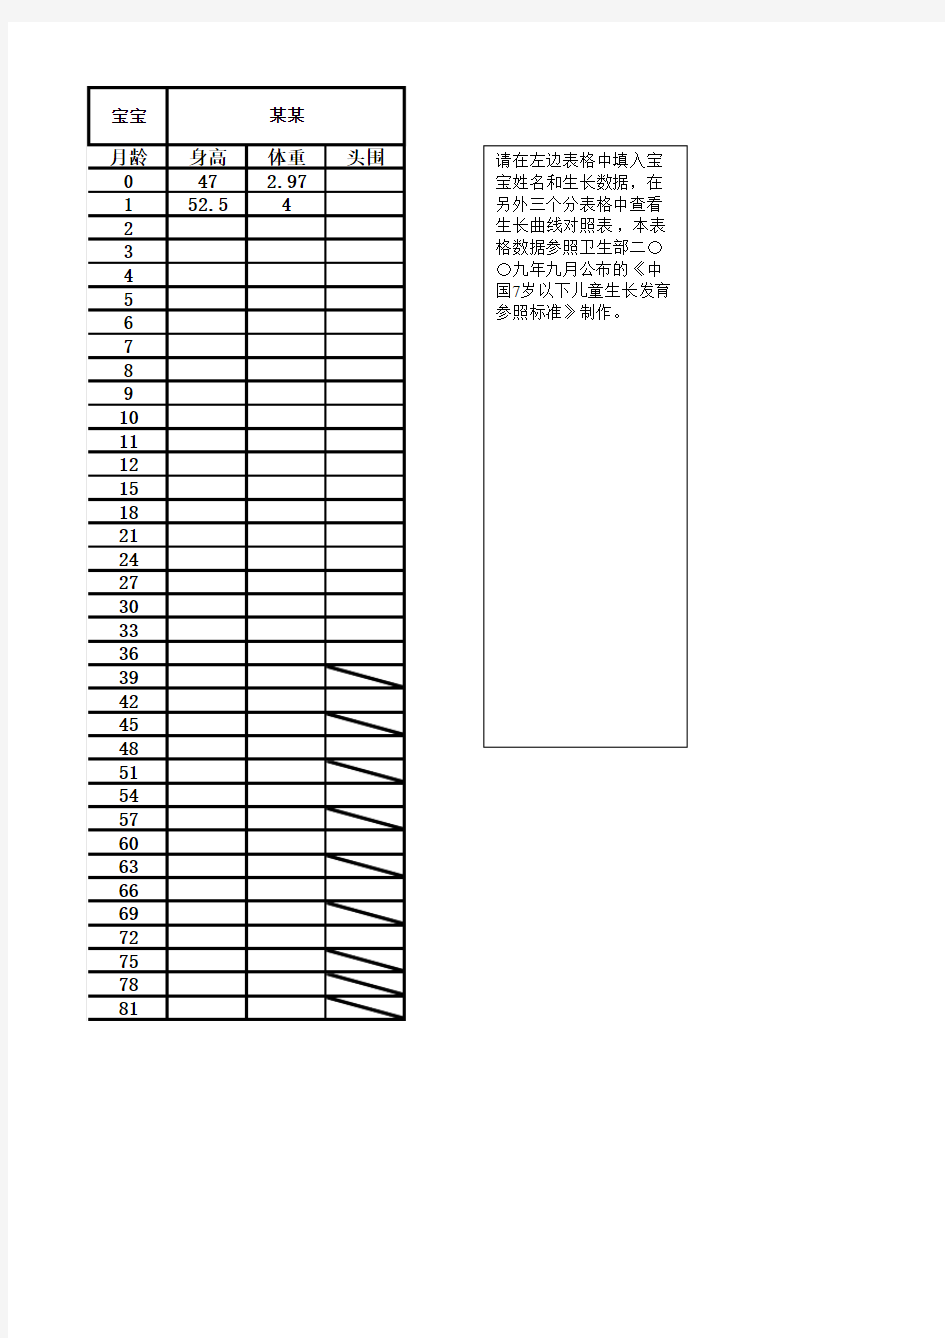 中国7岁以下儿童生长发育(曲线)参照标准